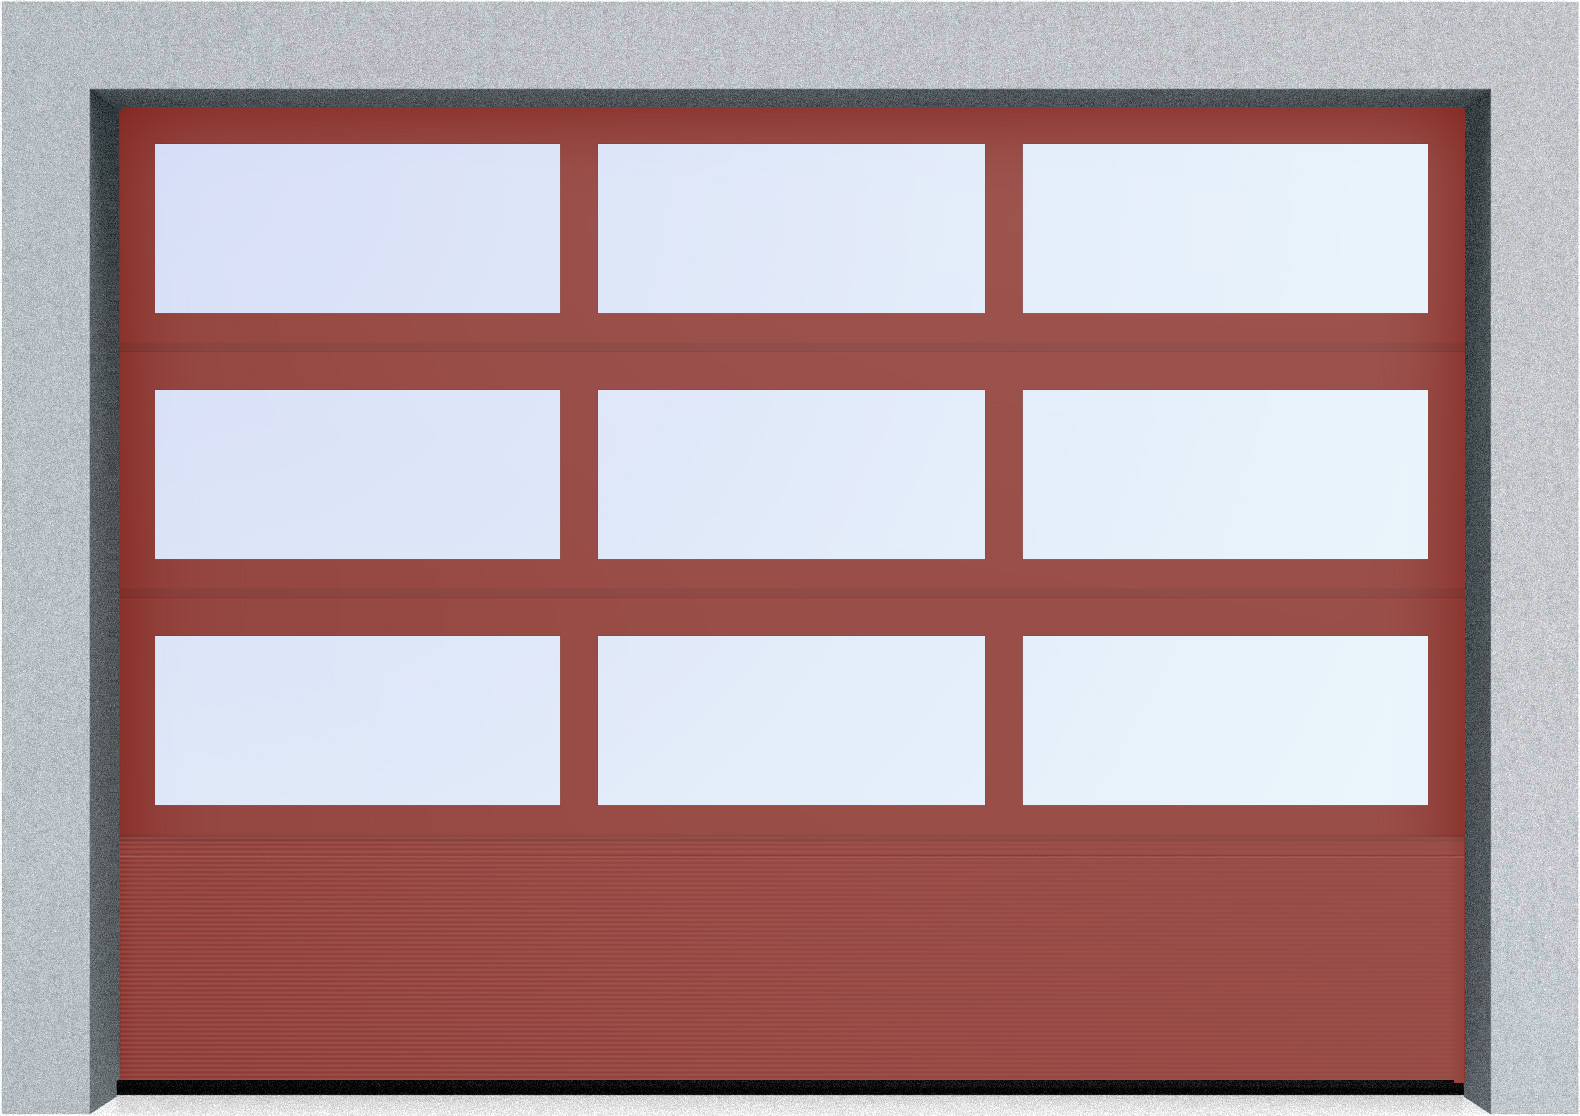  Секционные панорамные ворота серии AluTrend с комбинированным типом полотна (АЛПС) 2500х2625 нижняя панель S-гофр, Микроволна стандартные цвета, фото 3 